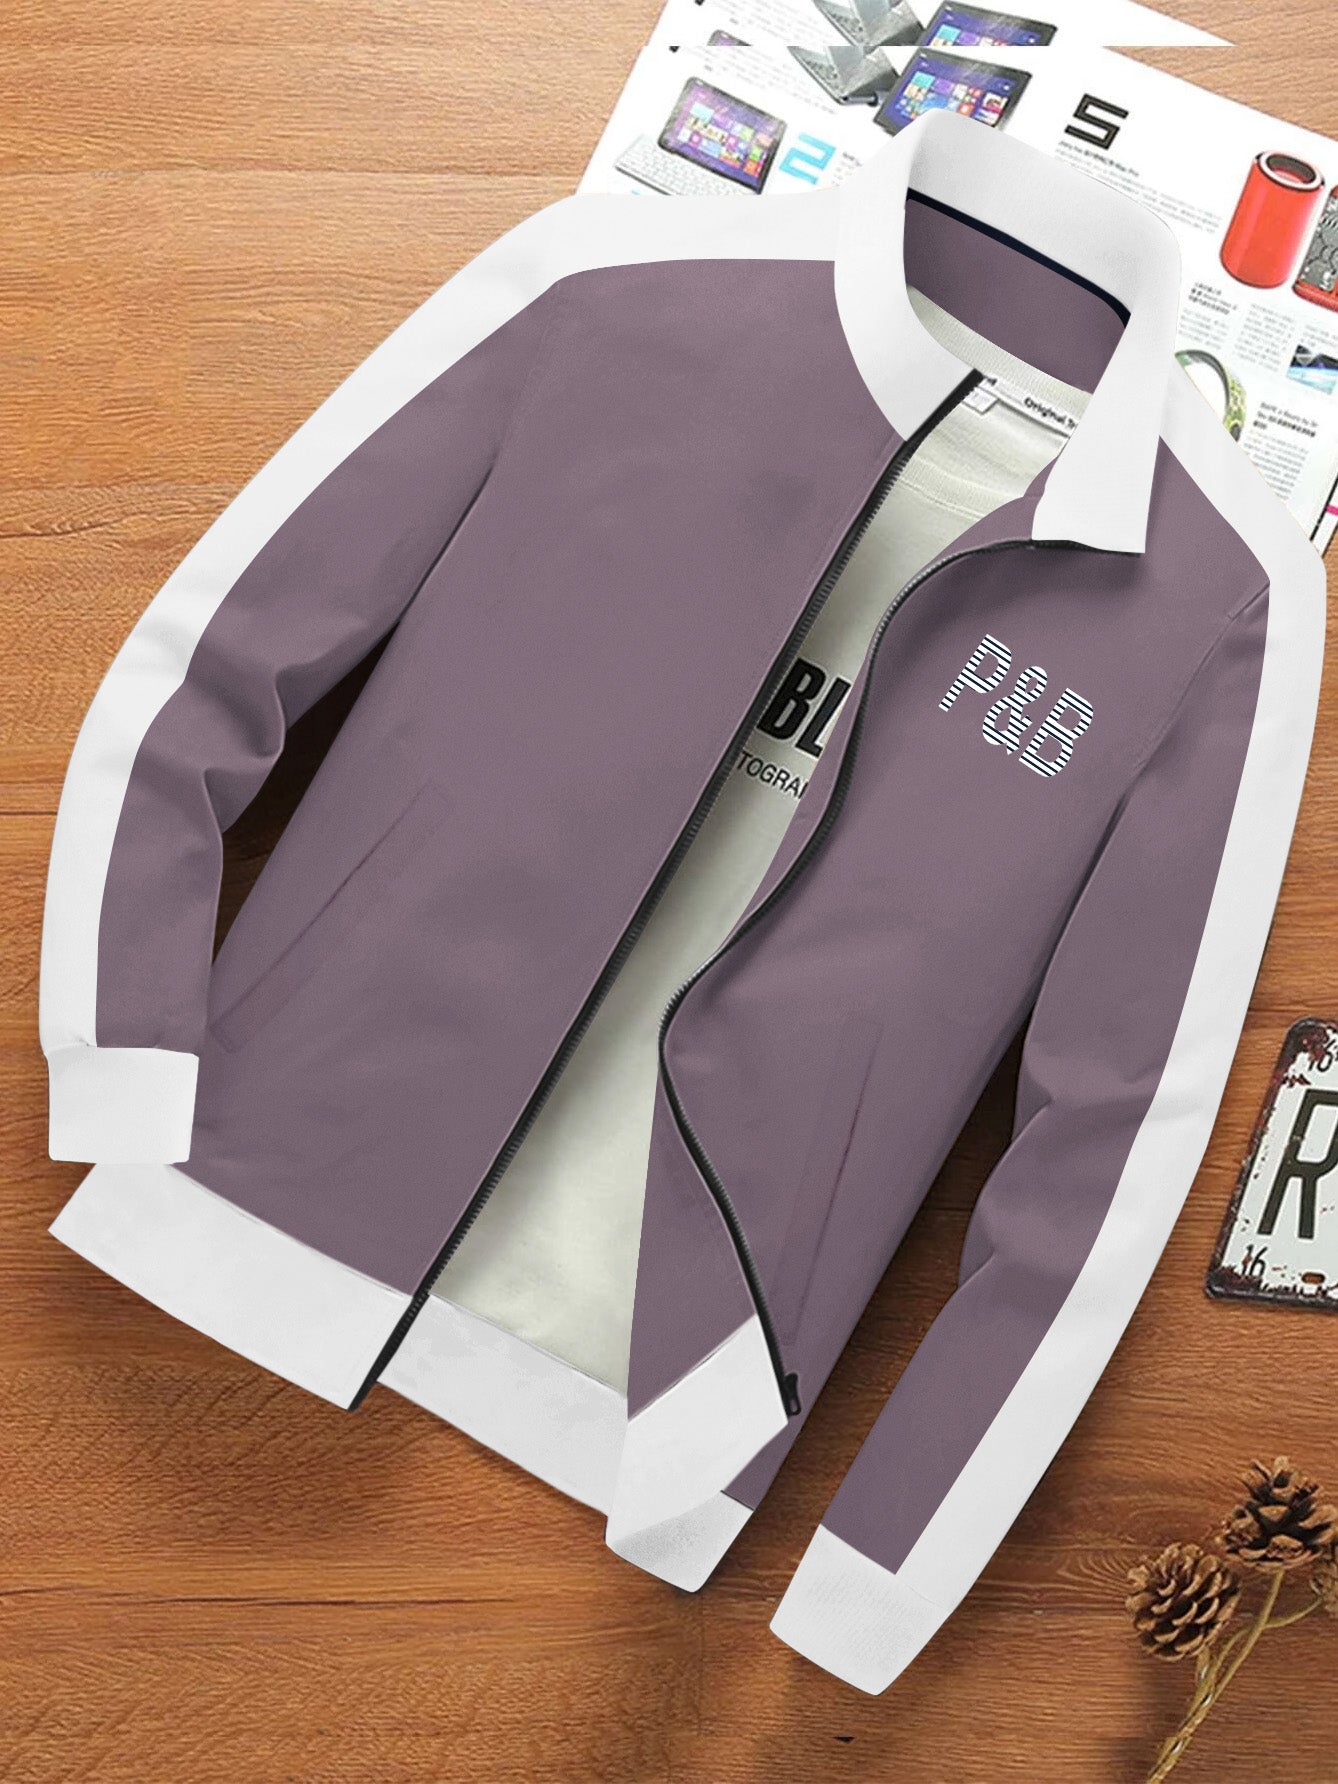 P&B Terry Fleece Zipper Mock Neck Jacket For Men-Dark Tea Pink with White-BE575